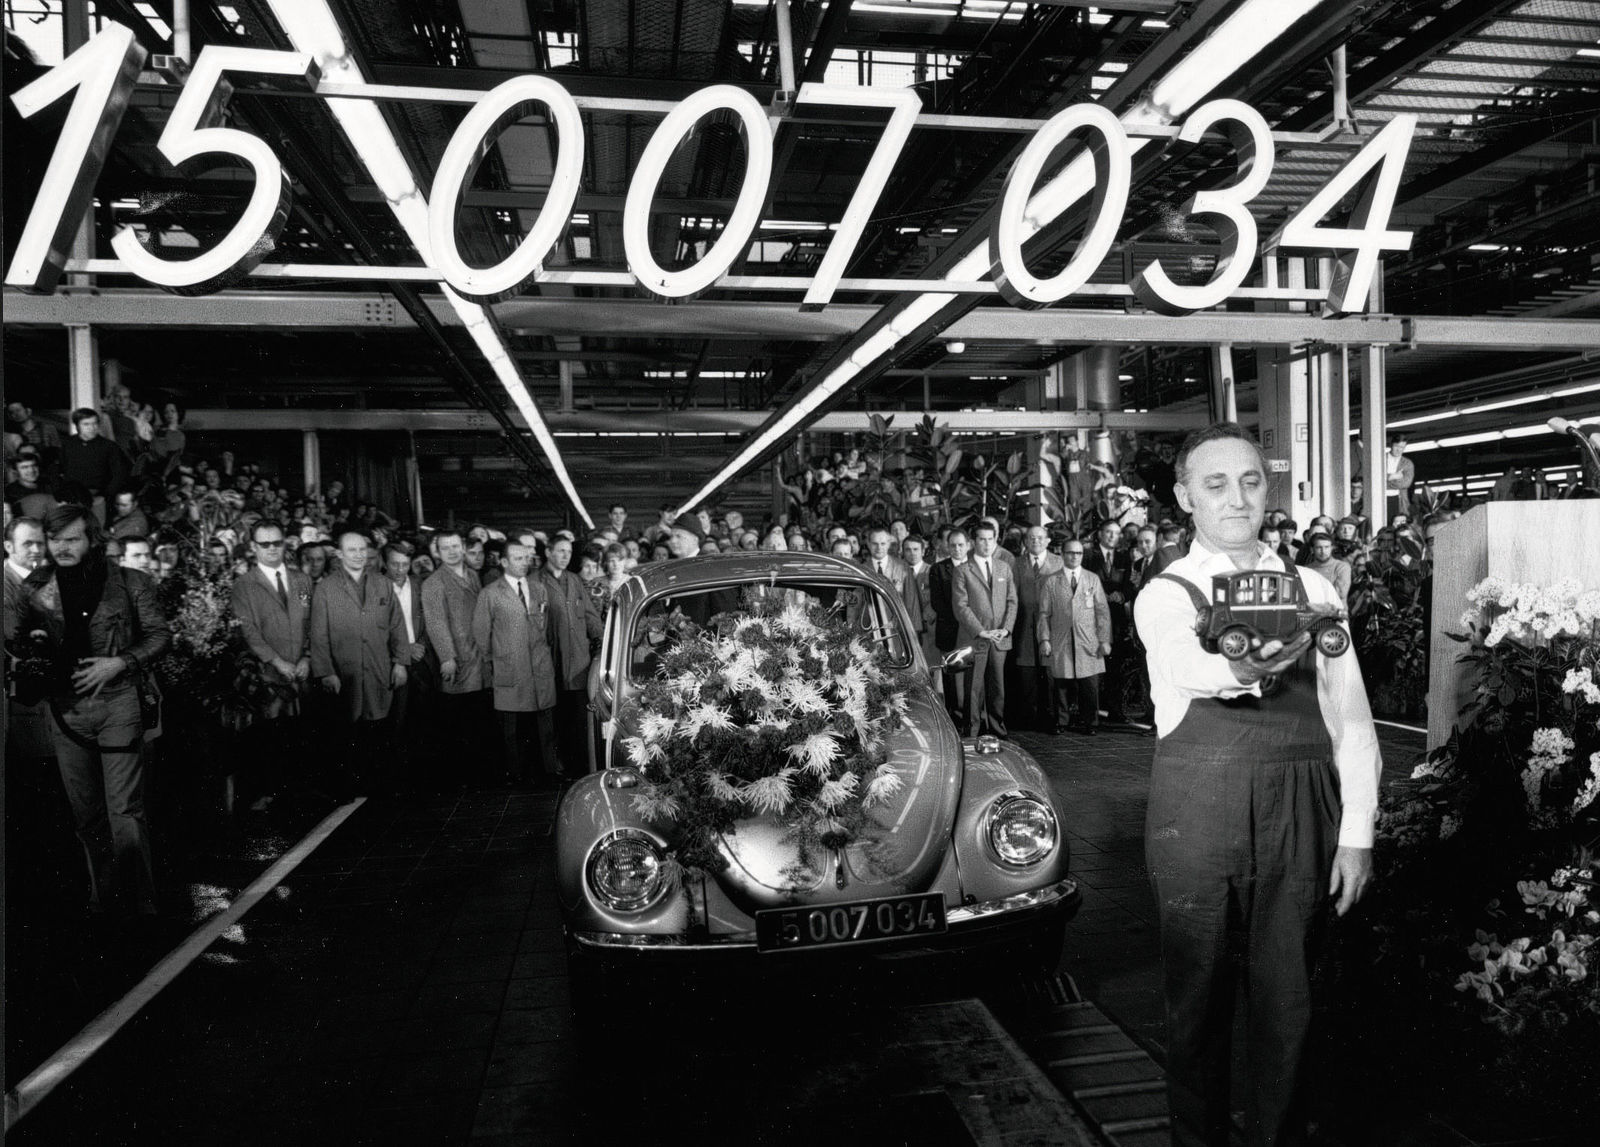 Februar 1972 Mit dem 15007034sten Kaefer ueberholt Volkswagen das legendaere Ford T-Modell